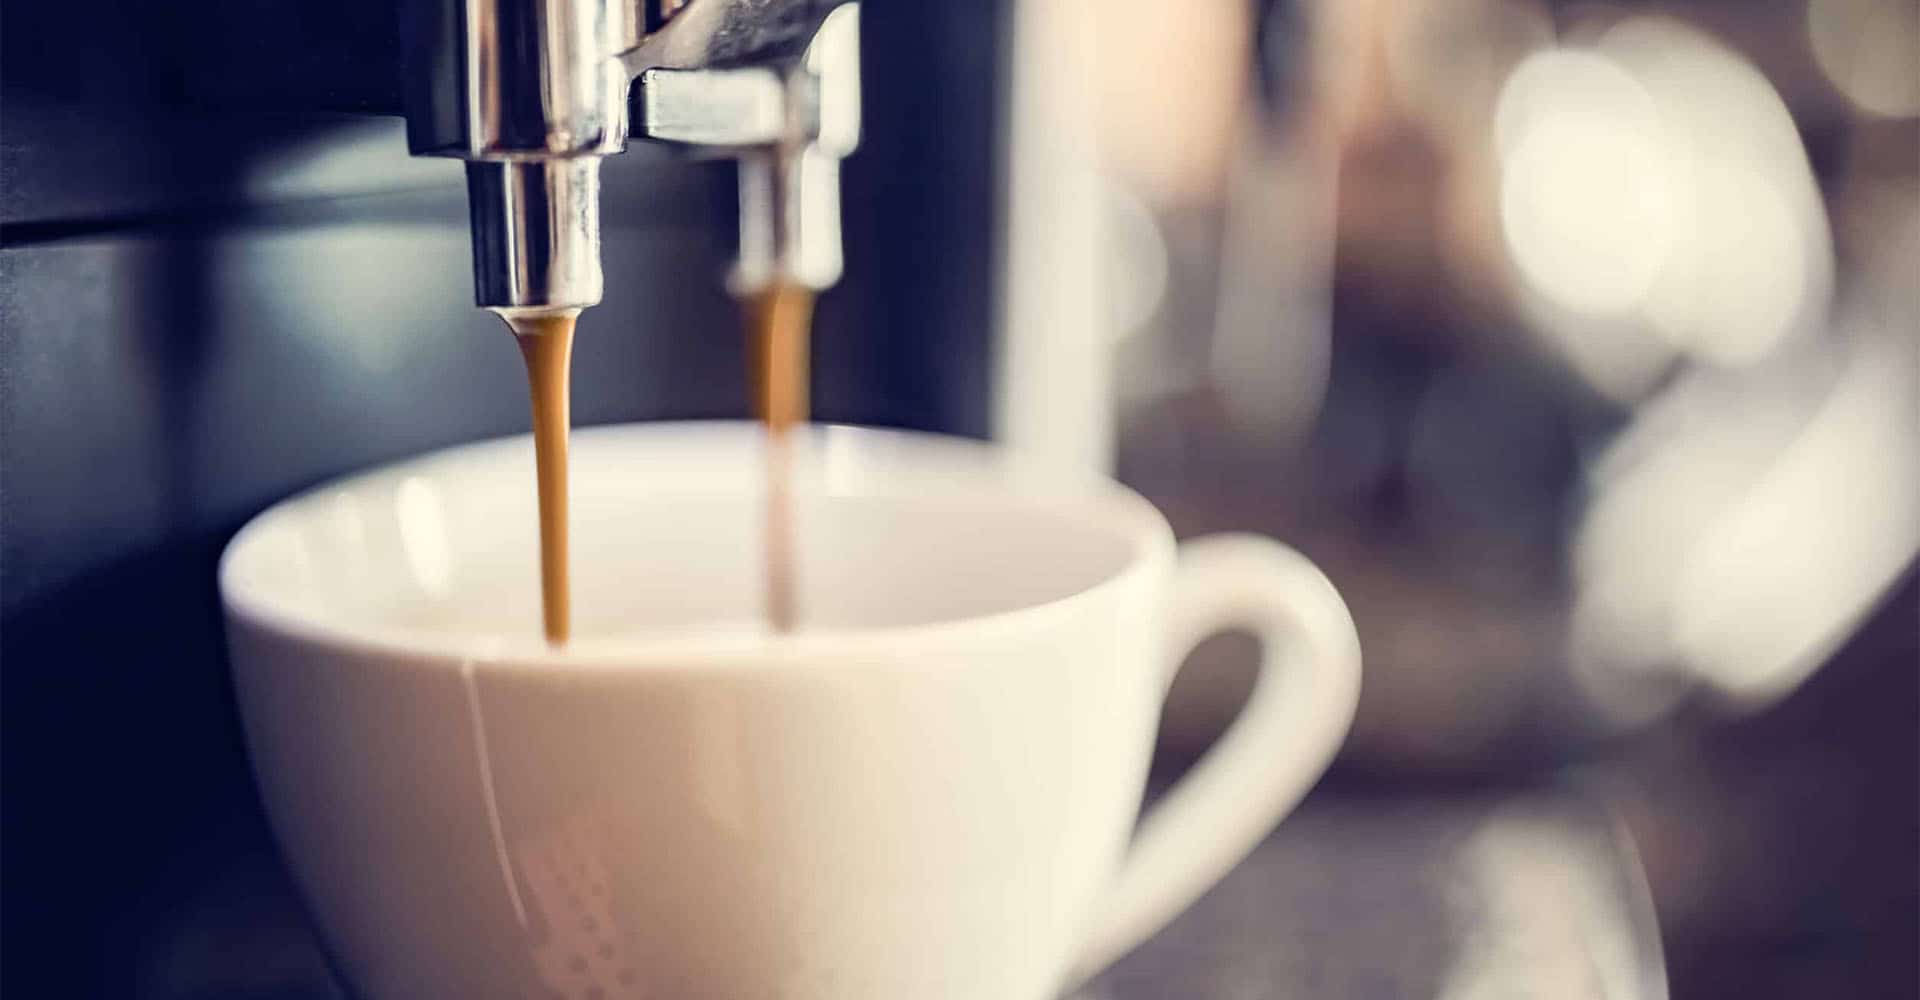 Kaffeemaschine macht Kaffee in Tasse